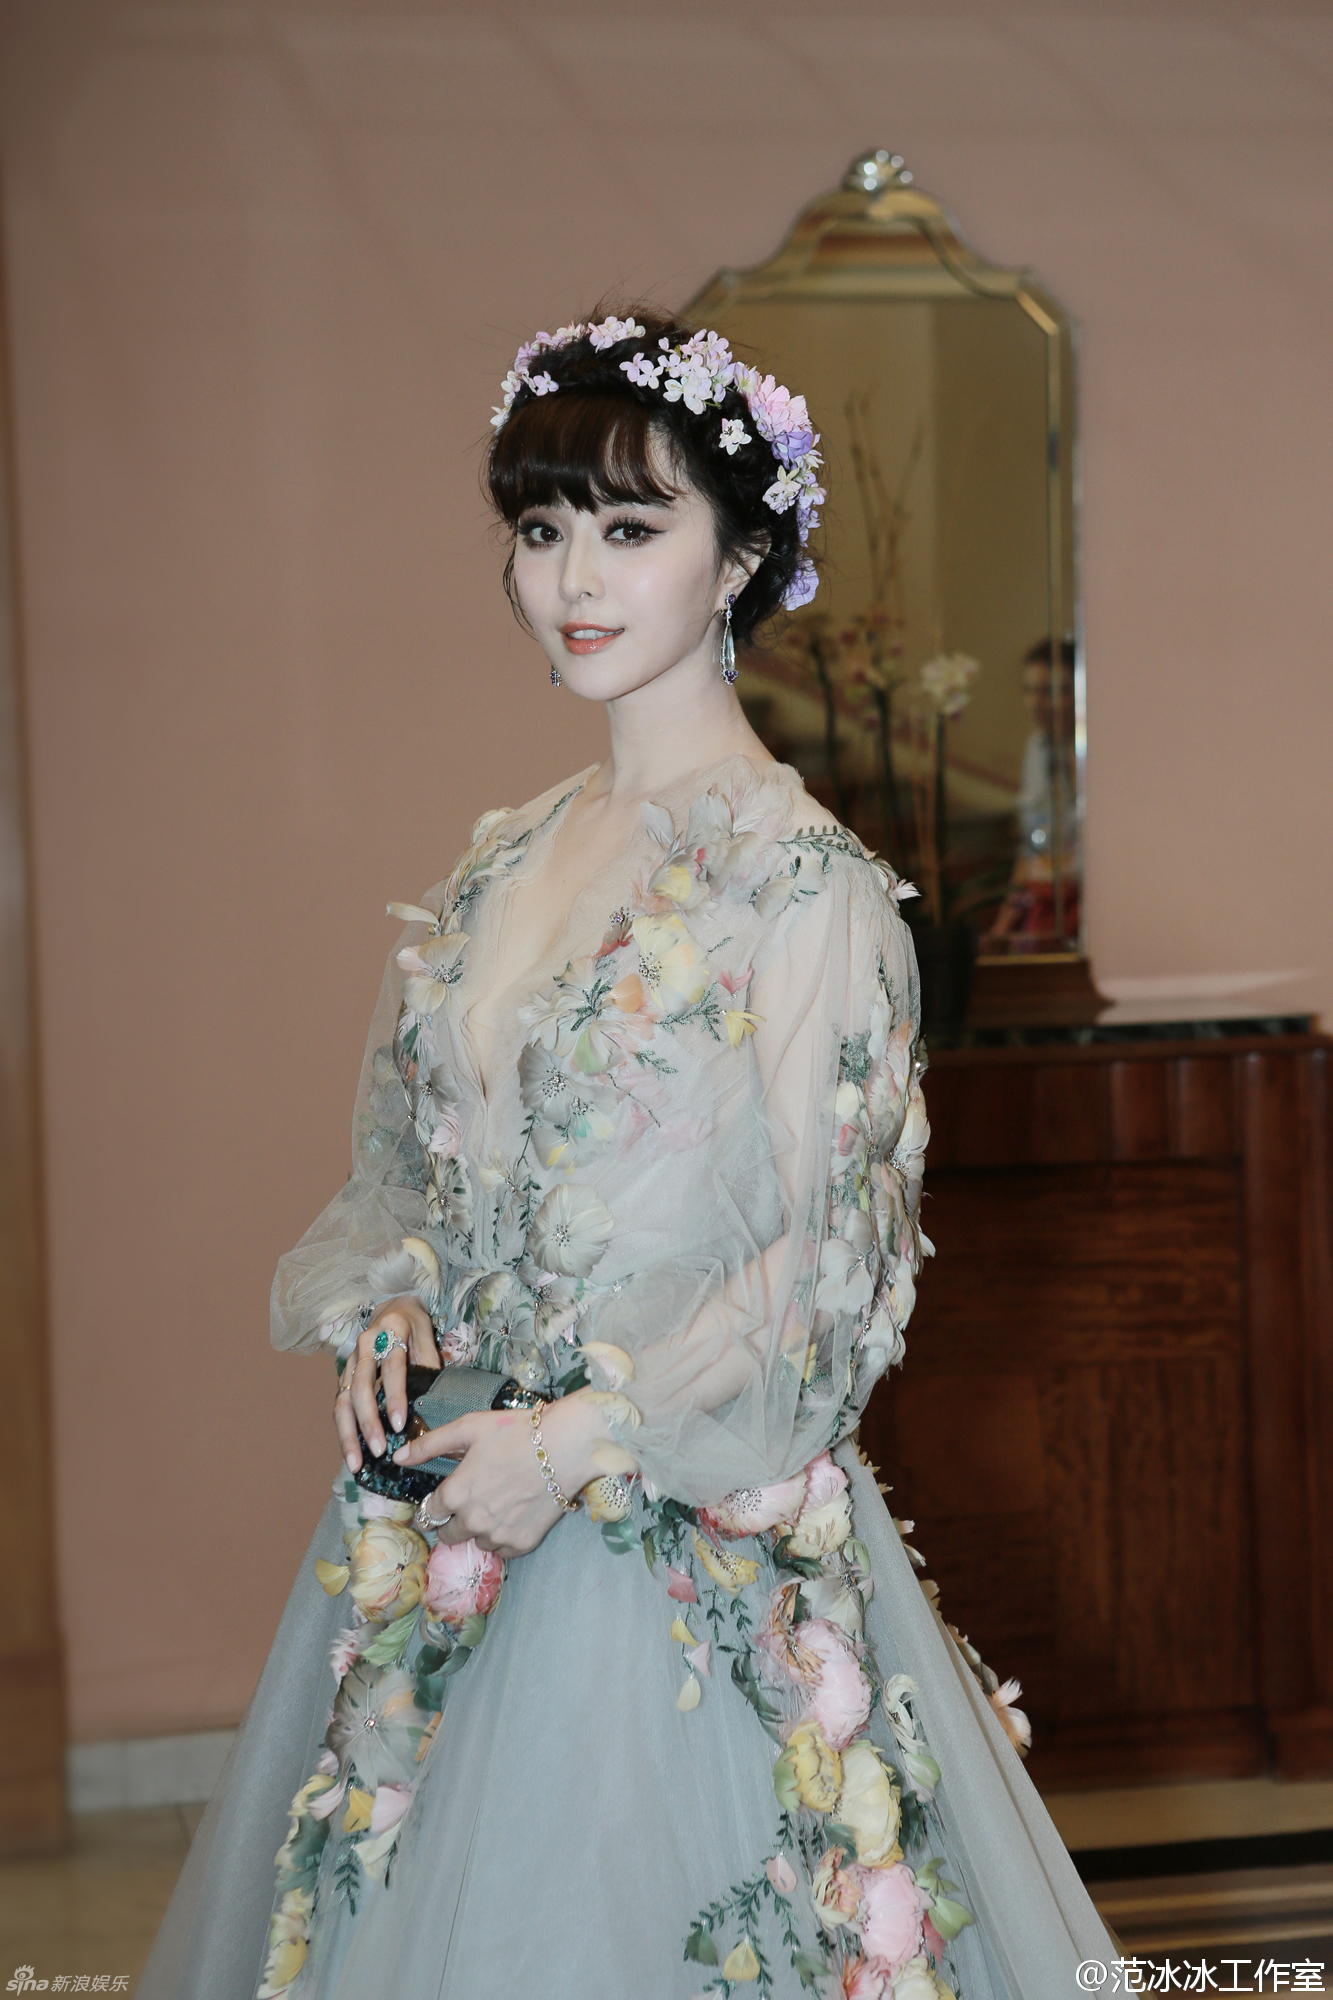 La actriz china Fan Bingbing gana el título del mejor look del segundo día del Festival de Cannes de 2015